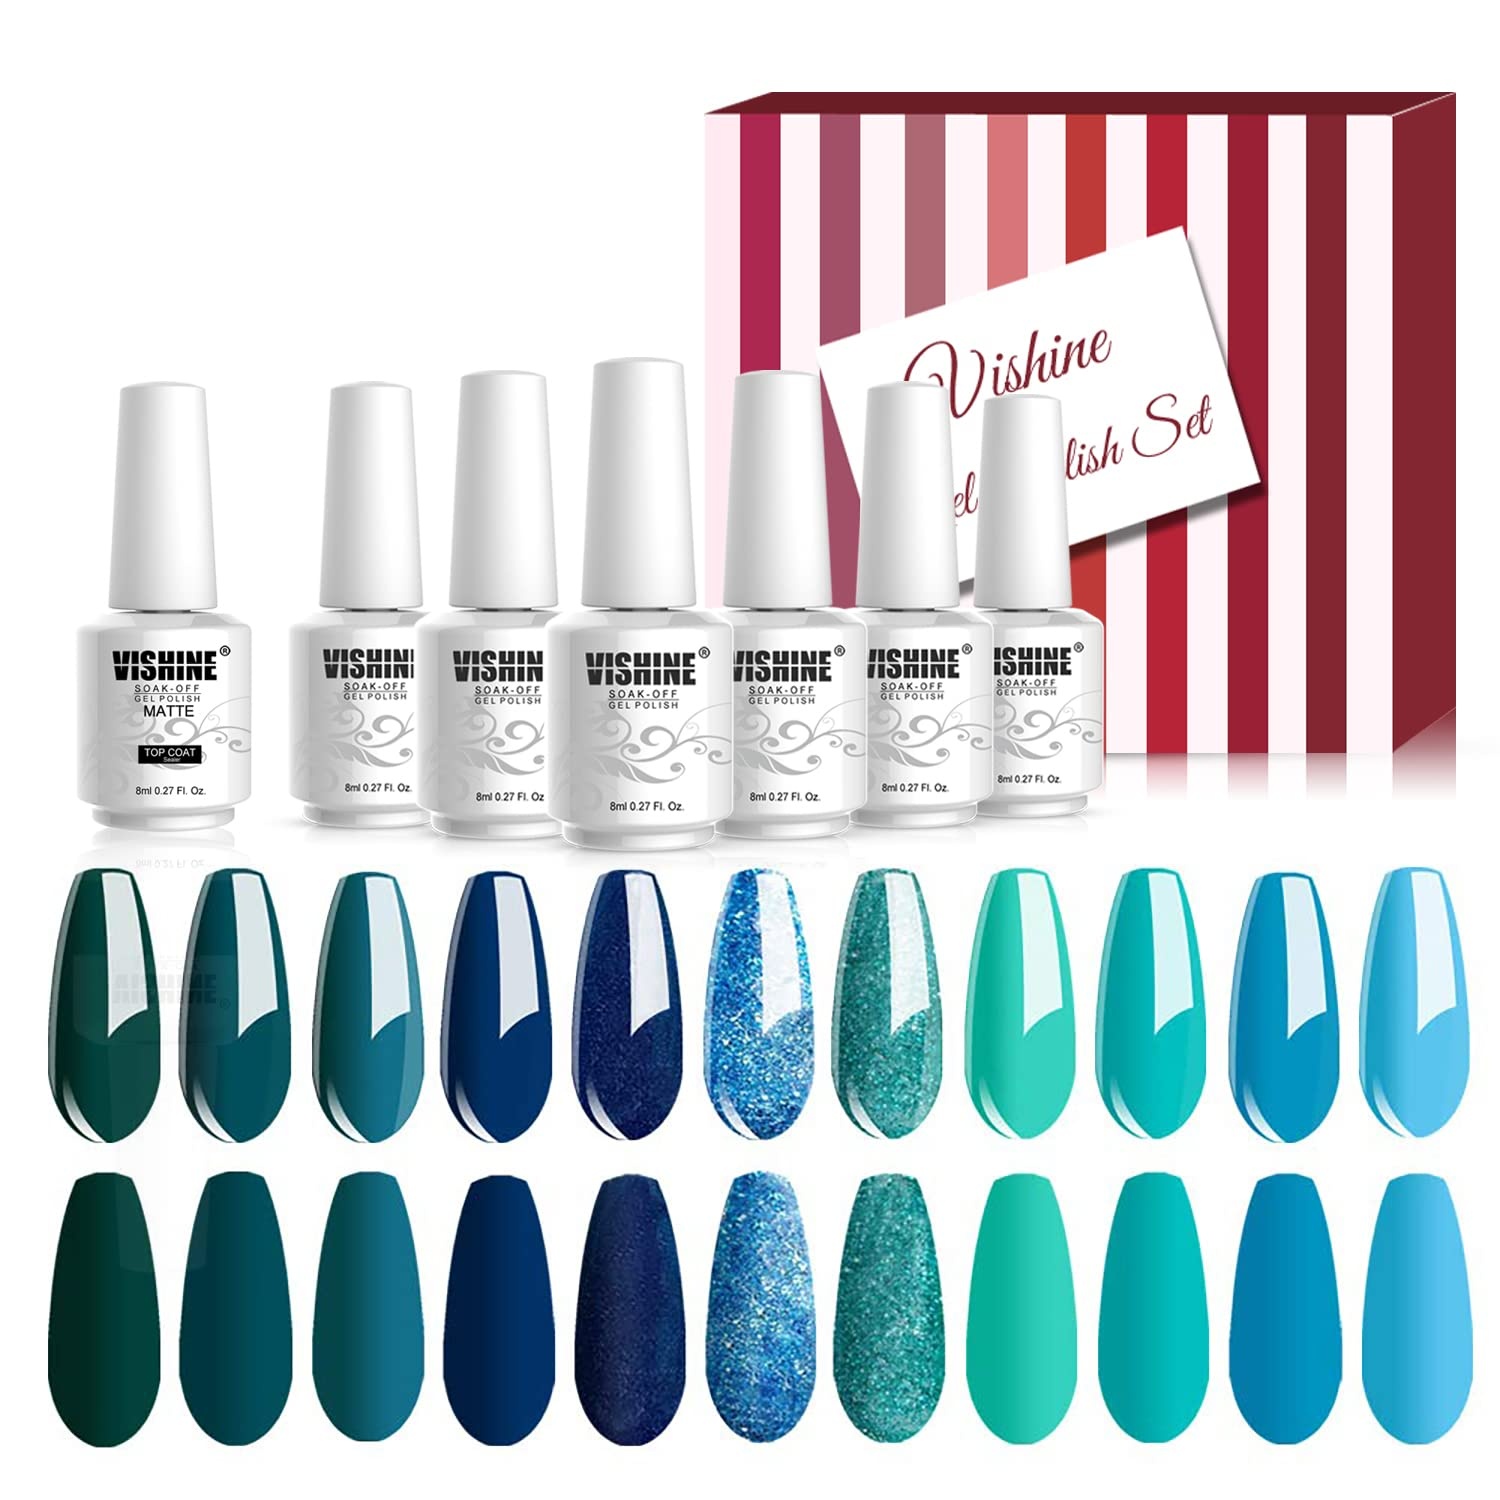 Vishine UV LED Gellack Blau Serie mehrfarbig Gel Nagellack Set Gel Nail Polish Kit - 12 x 8ml